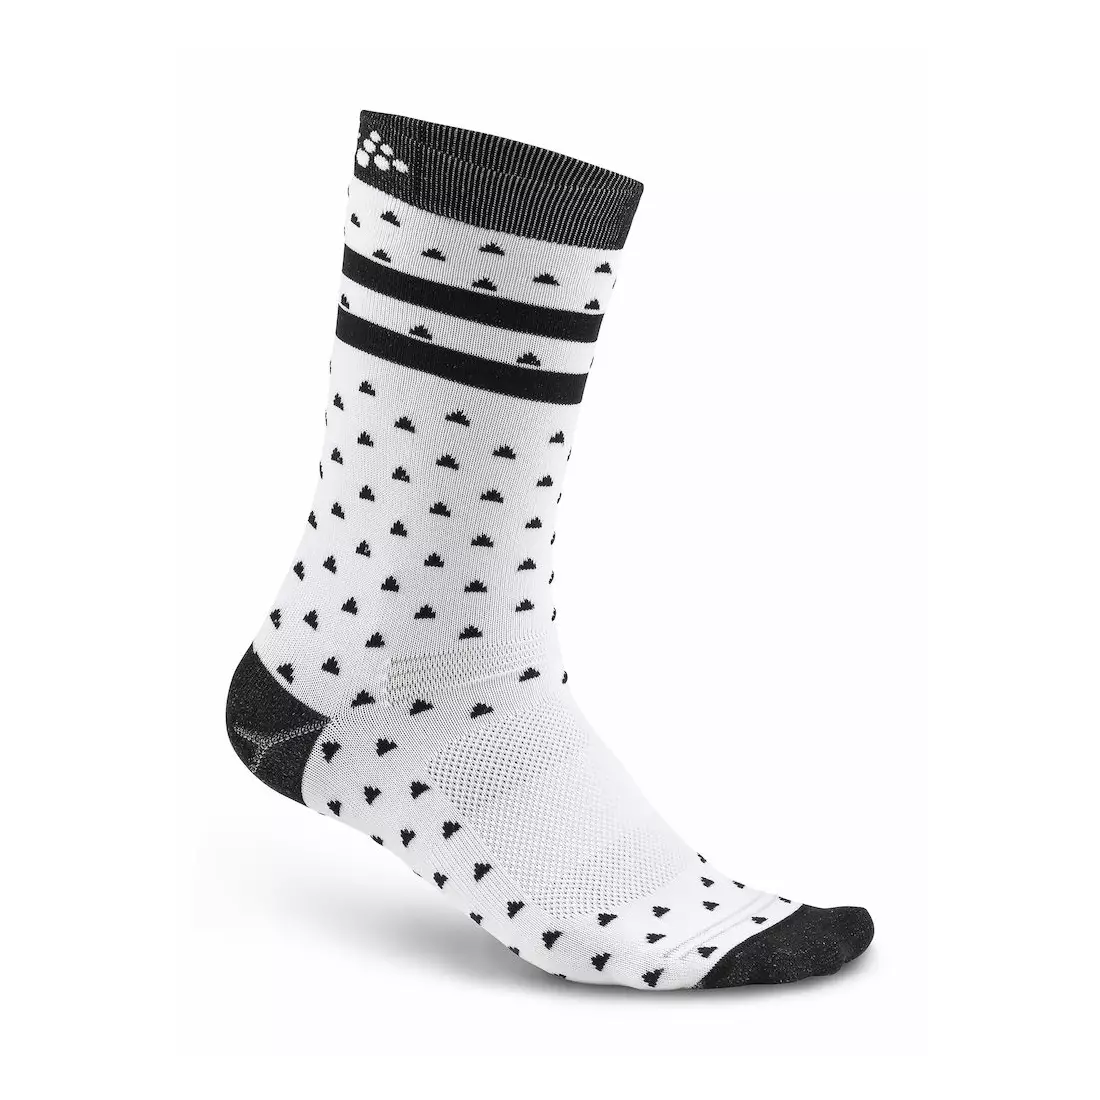 CRAFT Pattern Sock 1906061-900999 - Sports socks